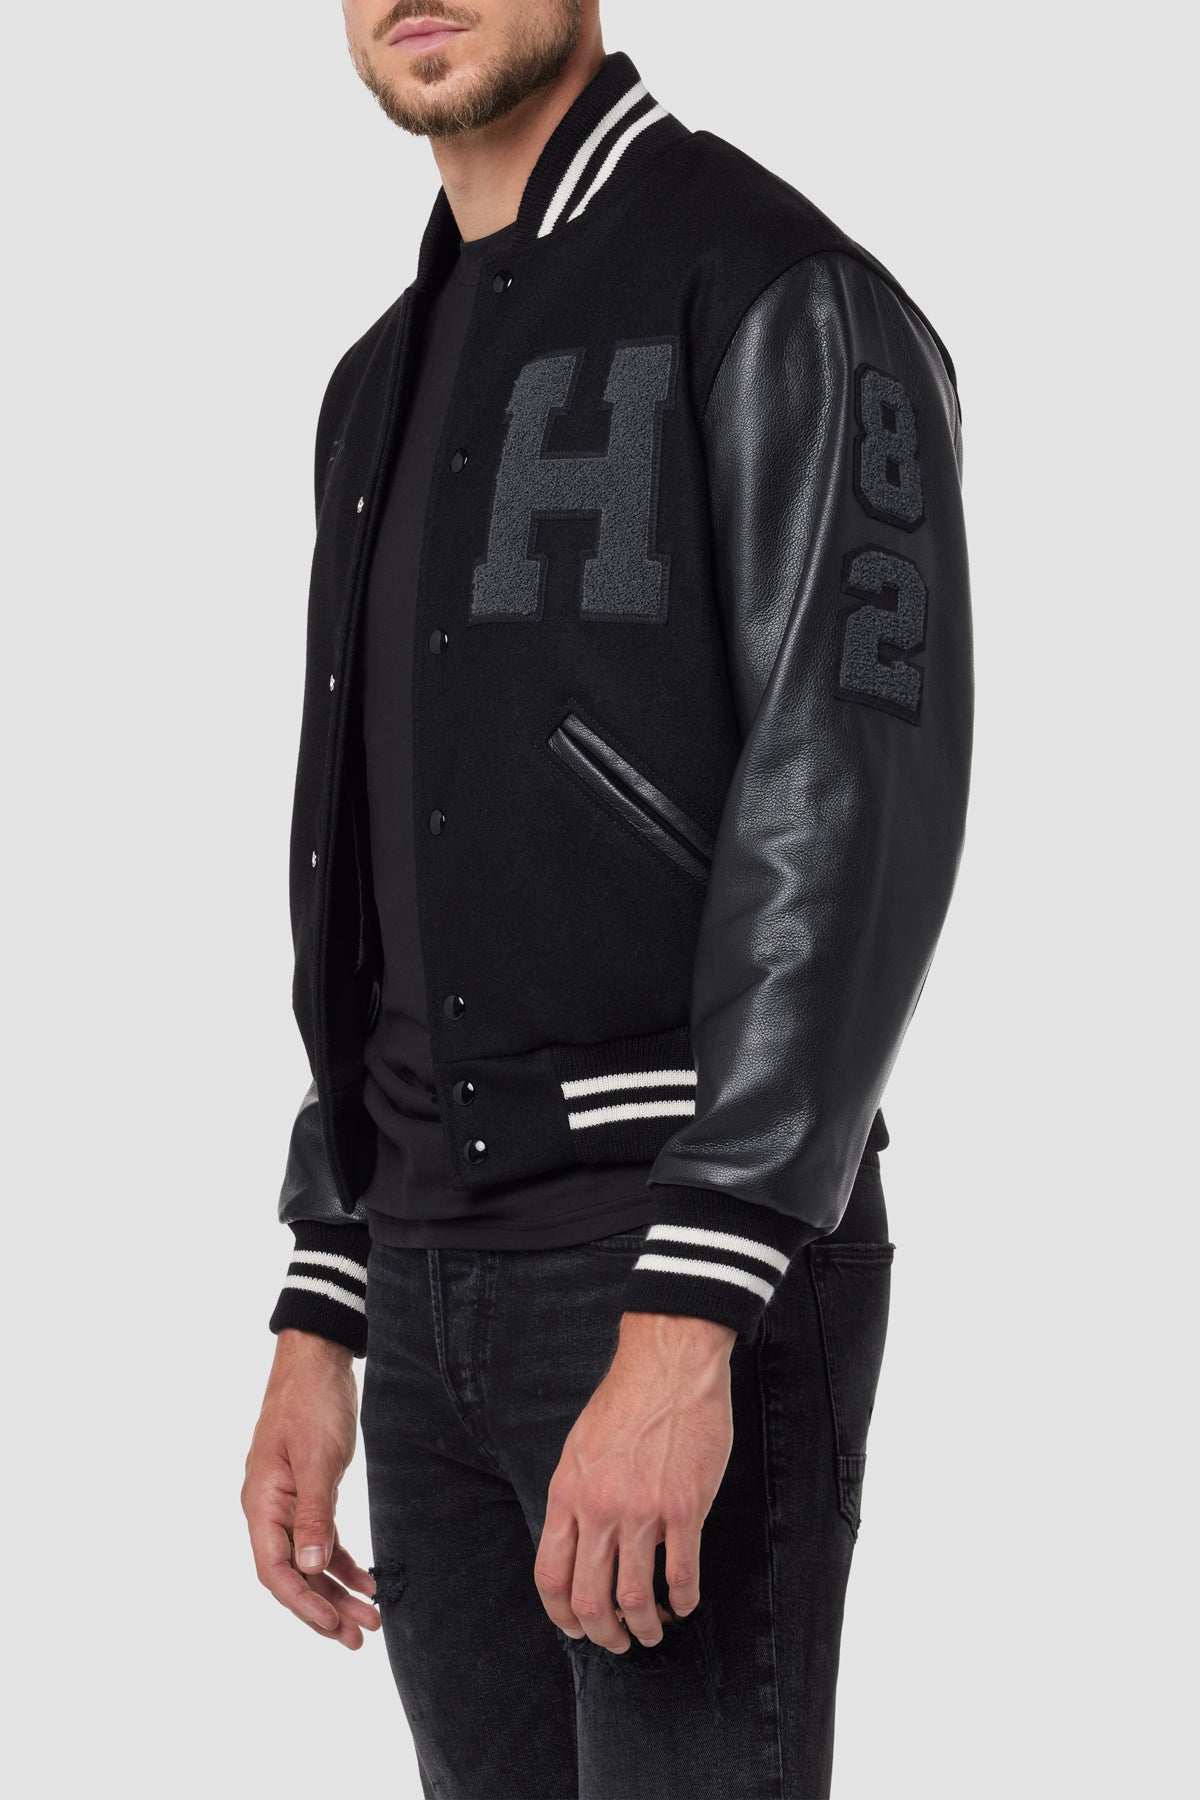 Hudson Jeans Men's Leather Jacket